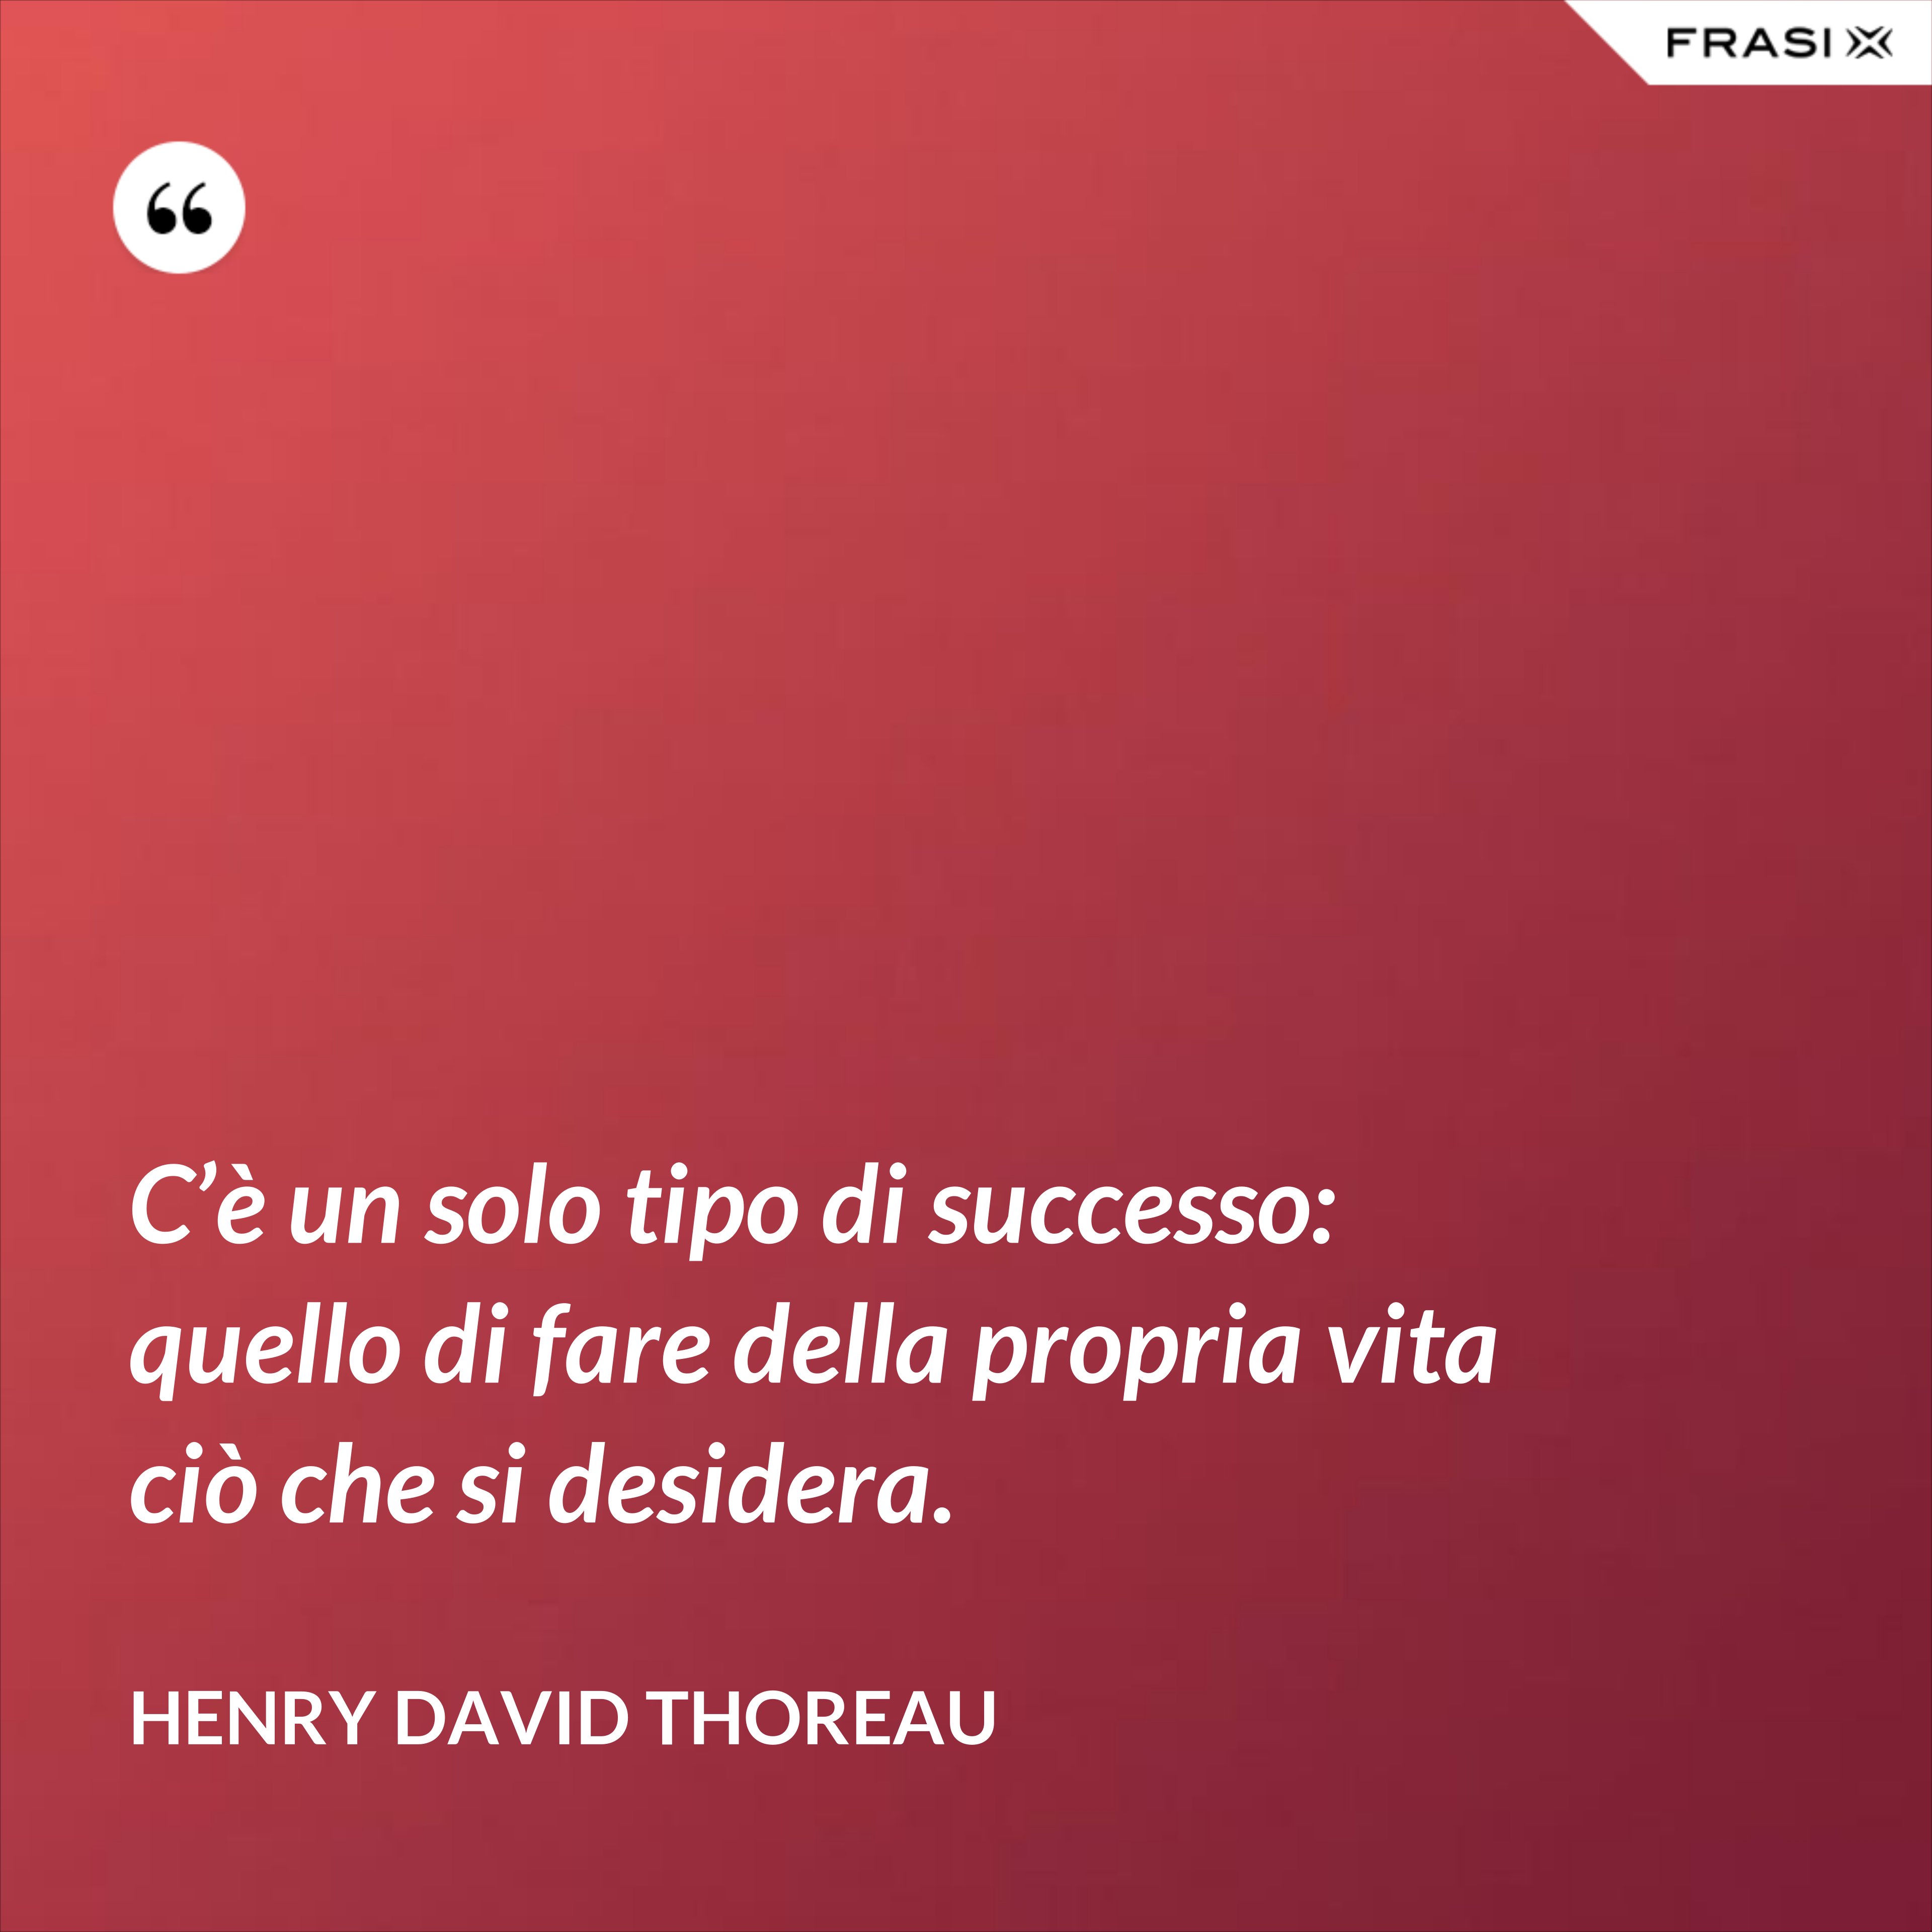 C’è un solo tipo di successo: quello di fare della propria vita ciò che si desidera. - Henry David Thoreau